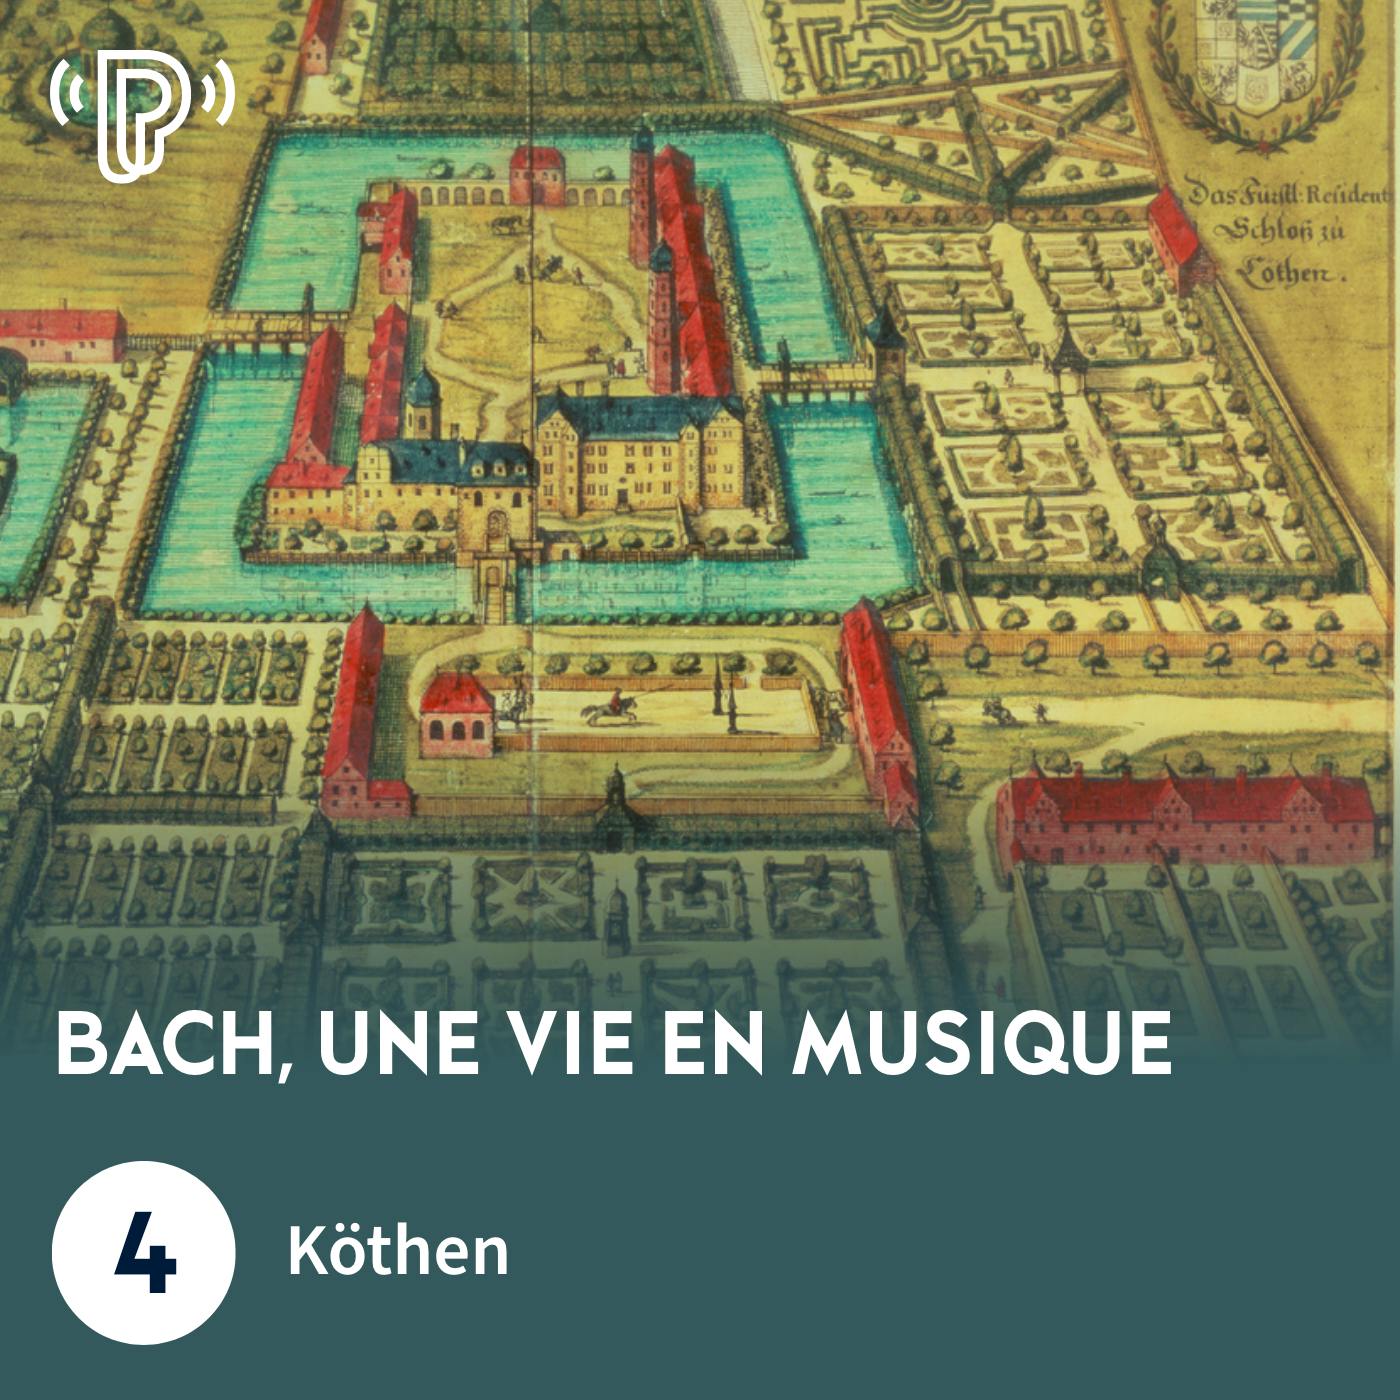 Bach, une vie en musique #4 - Köthen